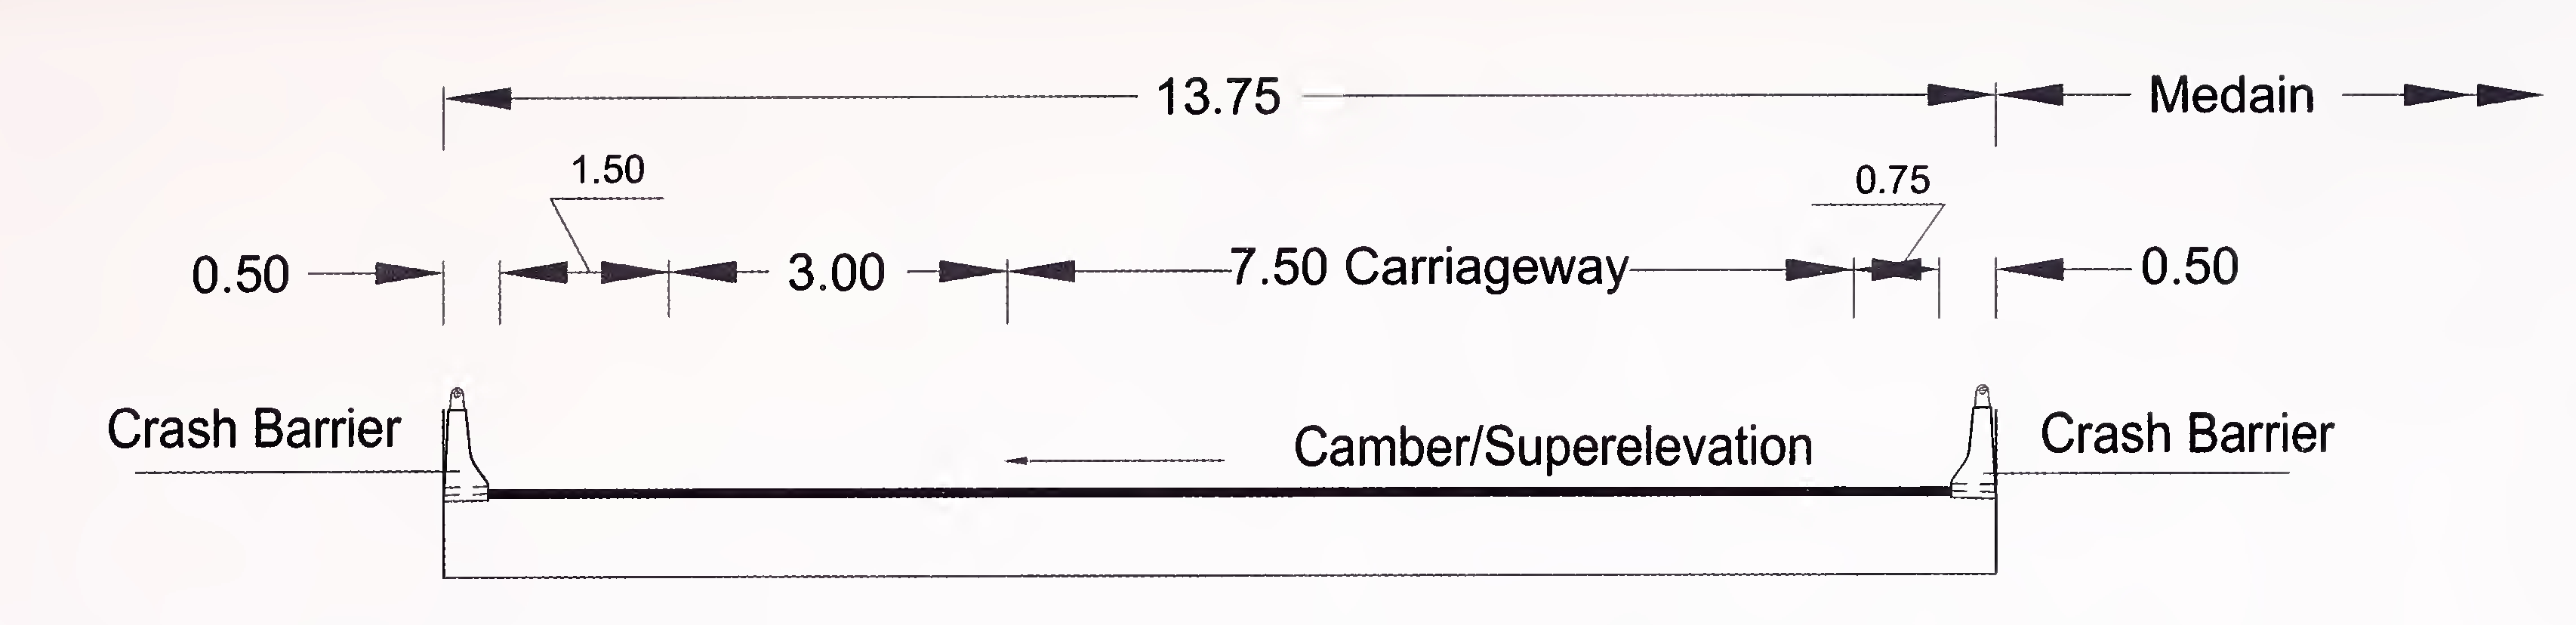 ਚਿੱਤਰ 6.5 (ਏ) 4-ਲੇਨ (2 × 4 ਲੇਨ) ਬ੍ਰਿਜ ਅਤੇ ਗਰੇਡ ਨਾਲ ਵੱਖਰੇ ructਾਂਚਿਆਂ (ਇਕ ਪਾਸੇ) ਦਾ ਖਾਸ ਕਰਾਸ-ਸੈਕਸ਼ਨ